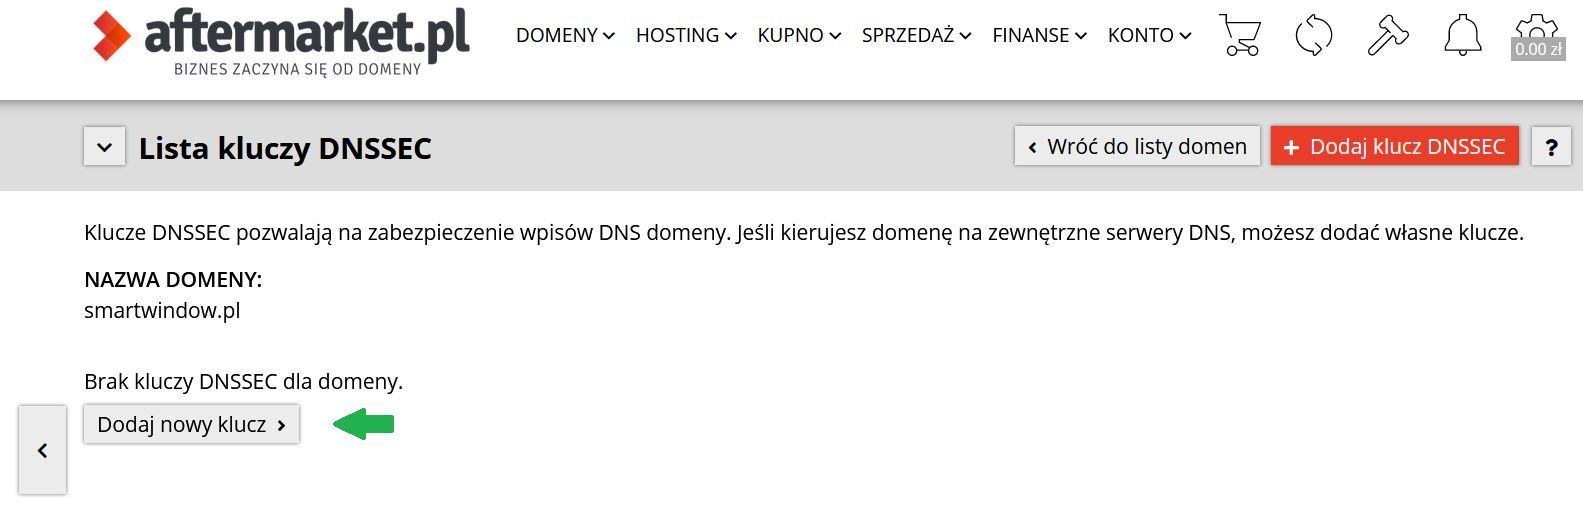 Zabezpiecz swoją domenę przez DNSSEC! W Aftermarket.pl to domyślne rozwiązanie